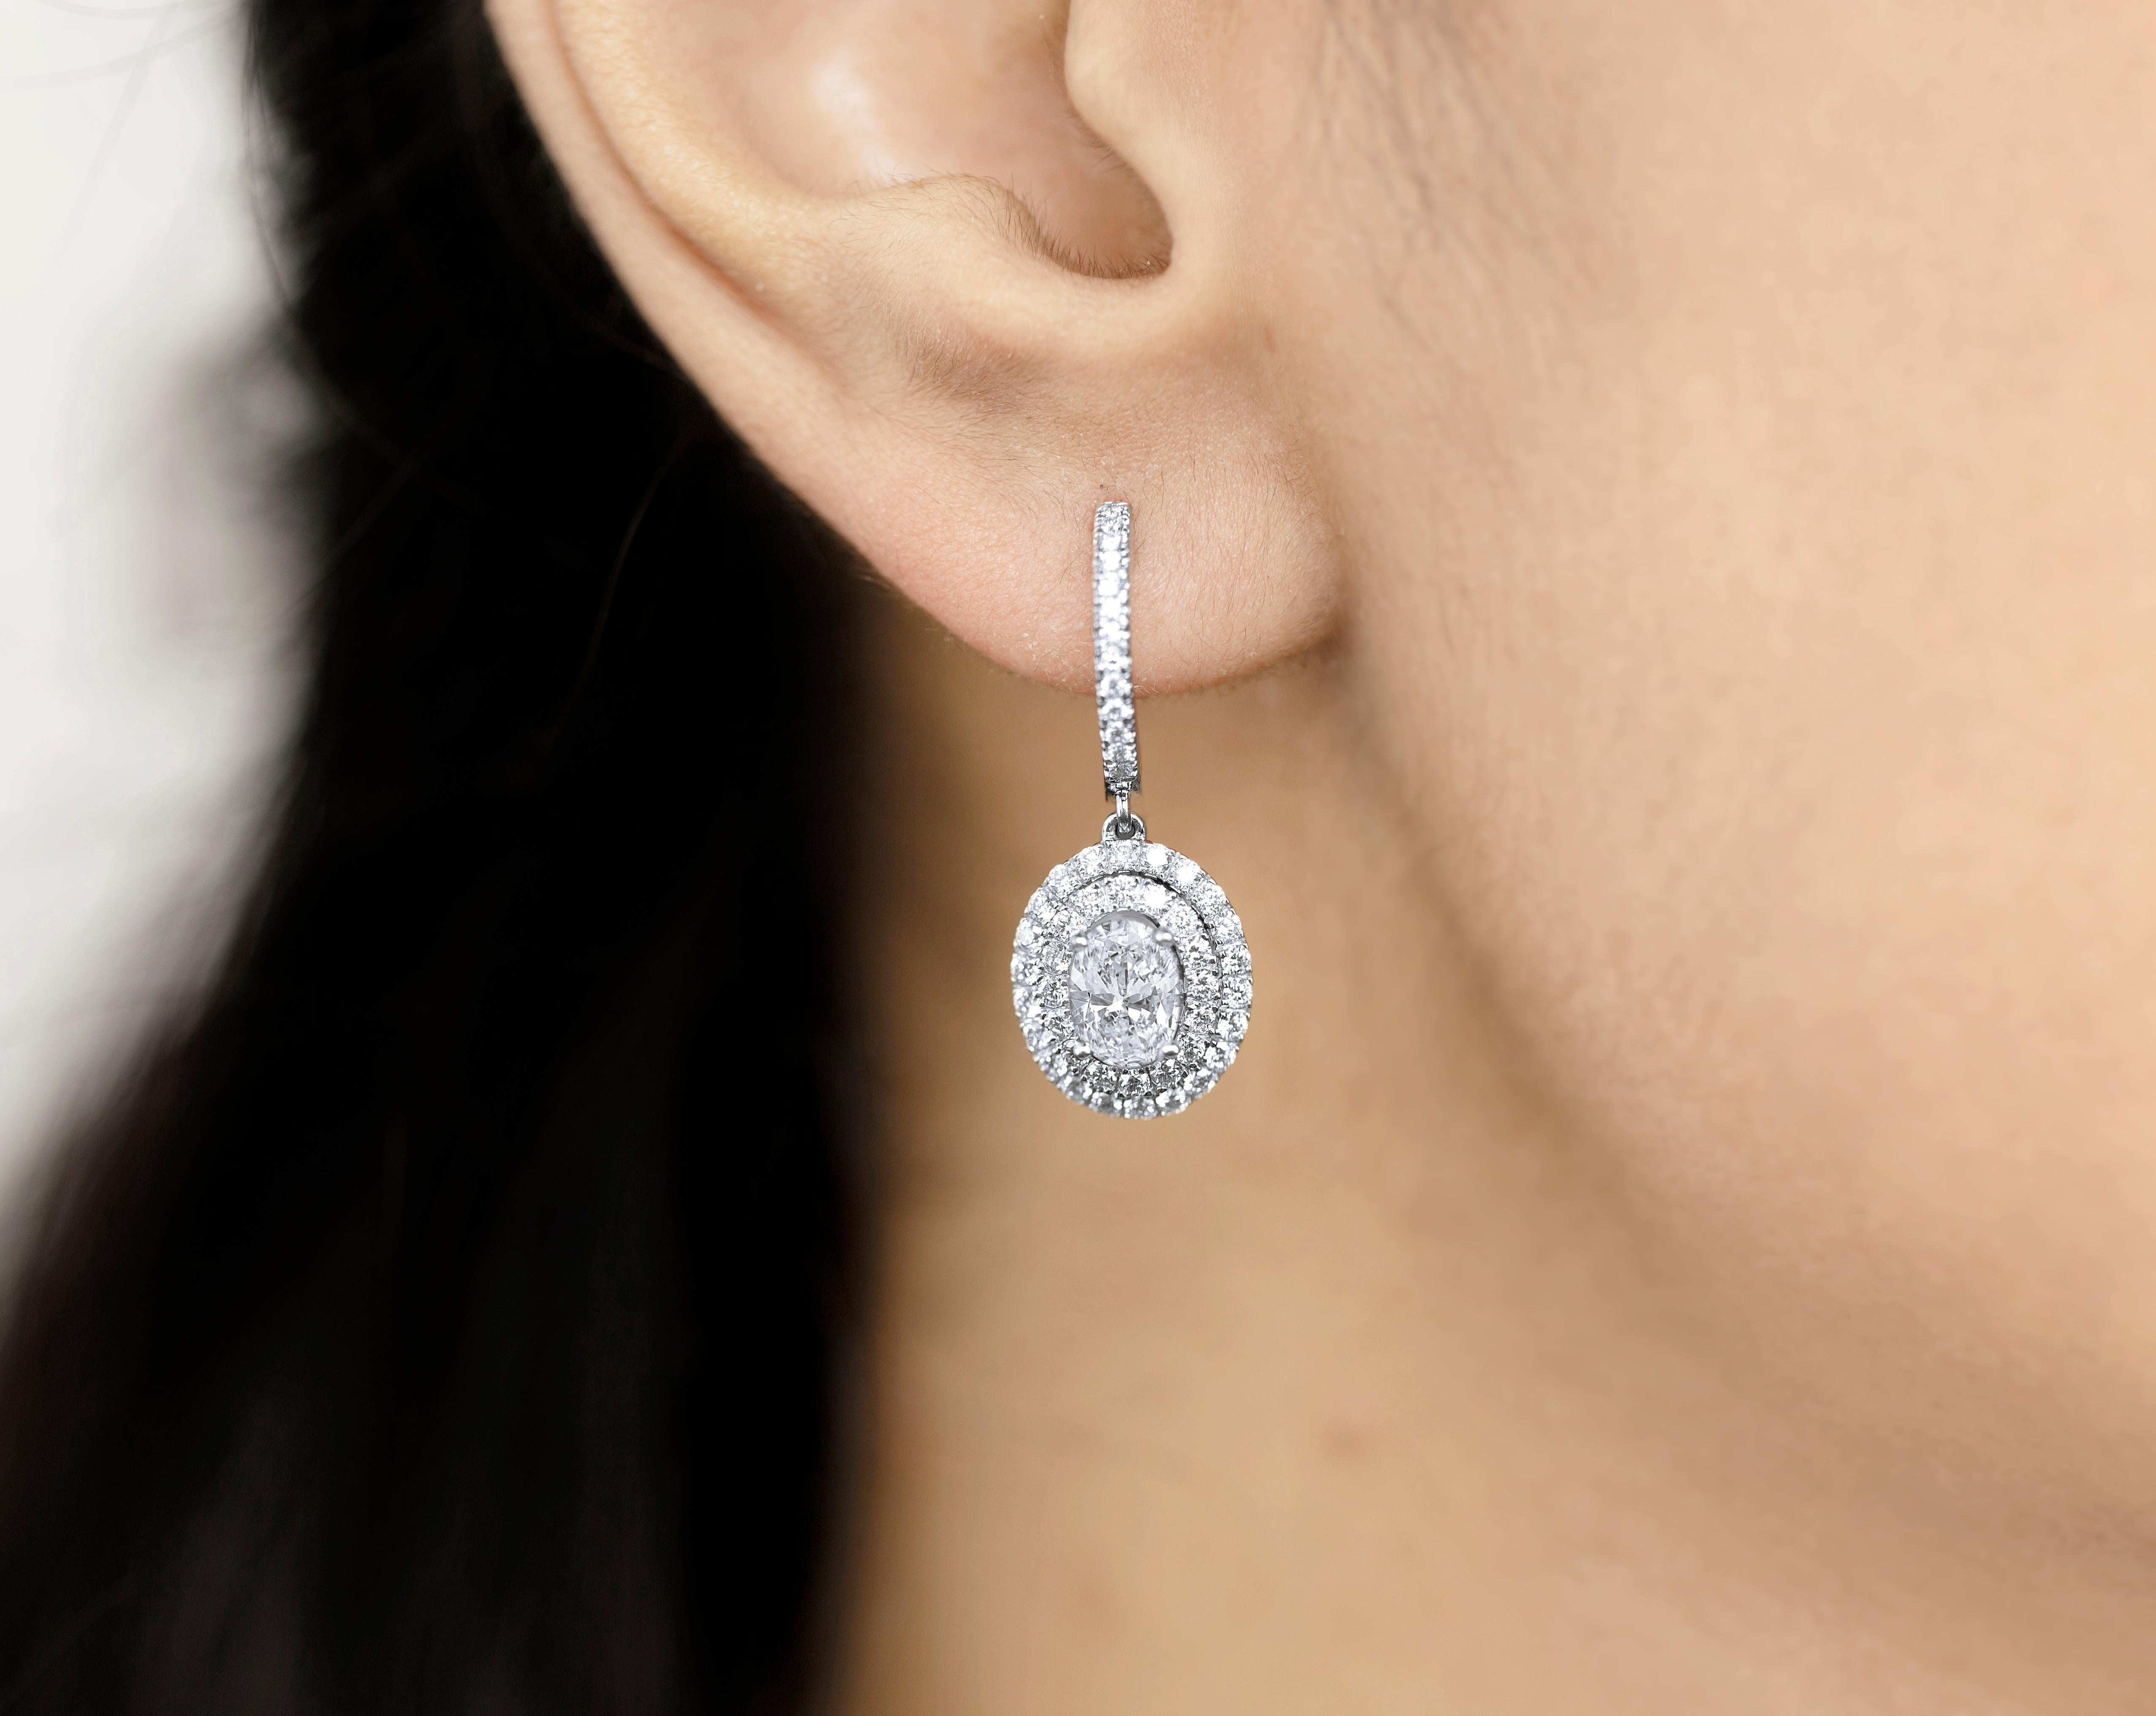 Boucles d'oreilles Art déco 1 carat diamant taille baguette avec monture Illusion, E F VS 


Disponible en or blanc 18k.

Le même design peut être réalisé avec d'autres pierres précieuses sur demande.

Détails du produit :

- Or massif (environ 6.3